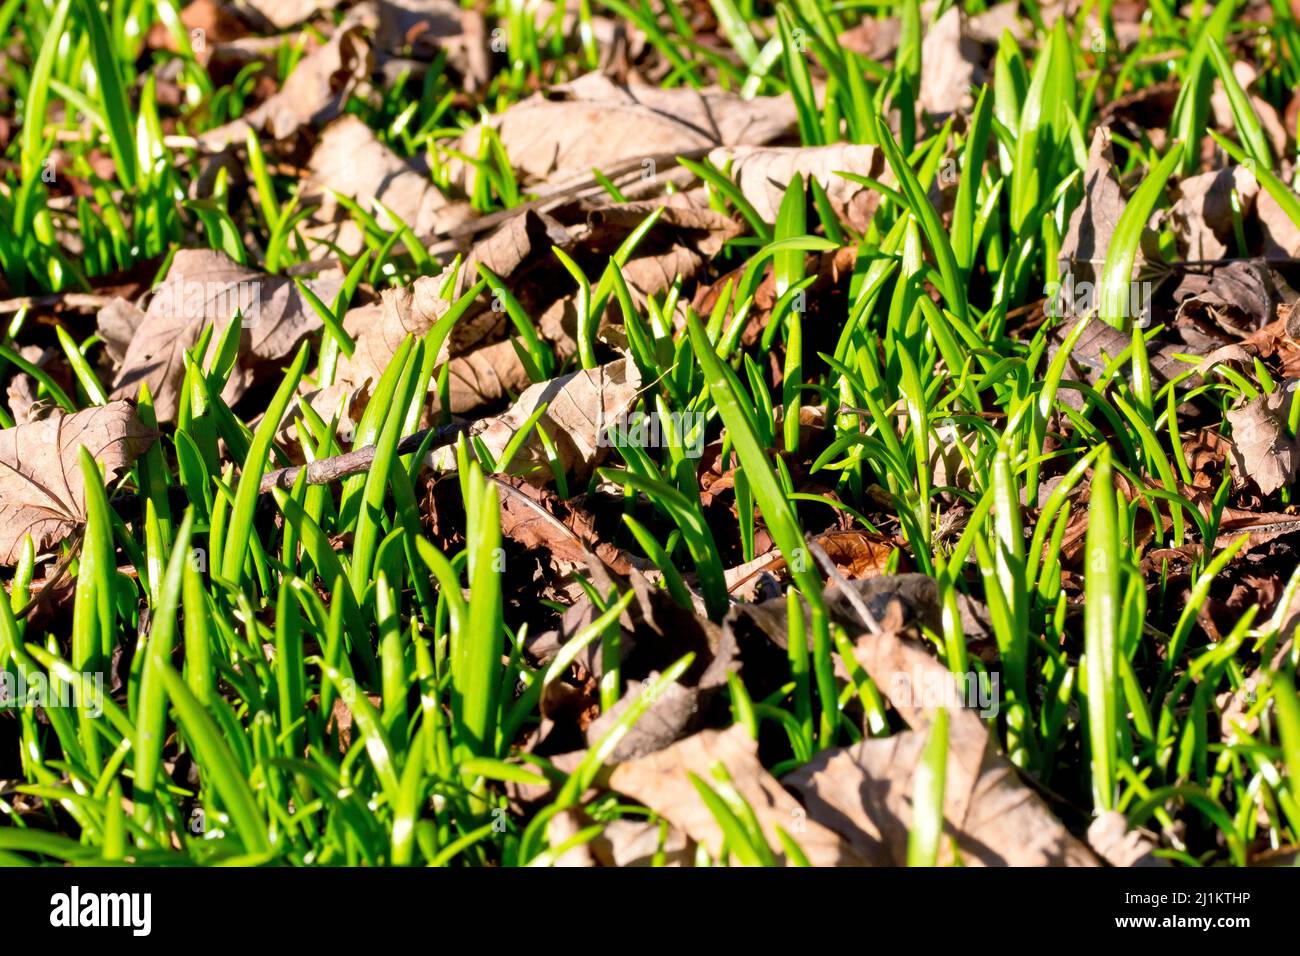 Primo piano dei primi germogli verdi di primavera che emergono da sotto la lettiera fogliare di un bosco. Foto Stock